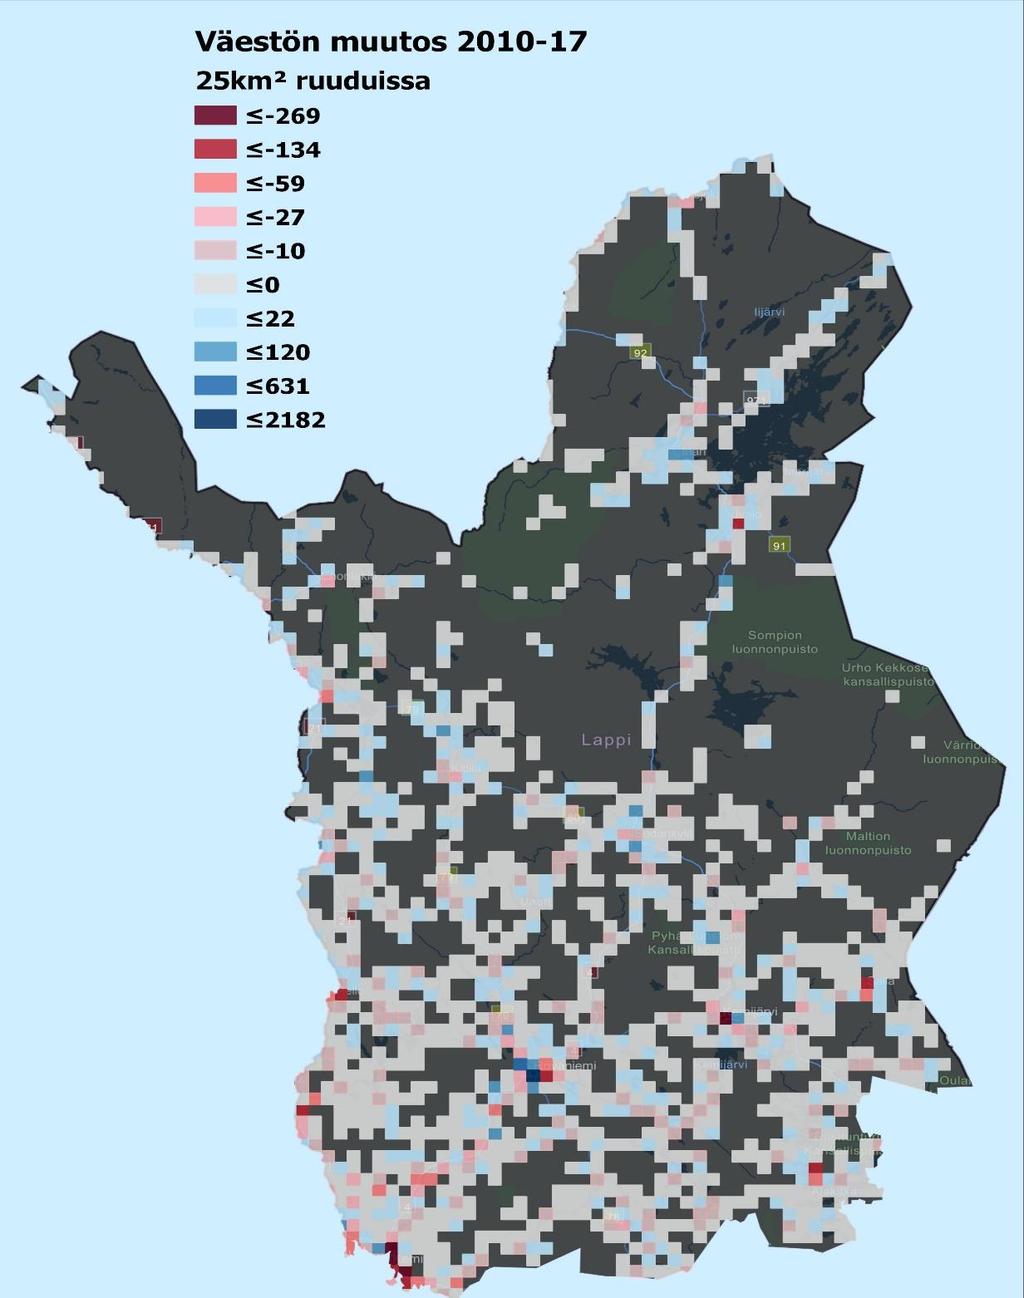 Väestönkehitys 2010-2017 Kartassa on kuvattu paikkatiedon avulla 5 km x 5 km ruuduissa Lapin väestönkehitystä vuosina 2010-2017.